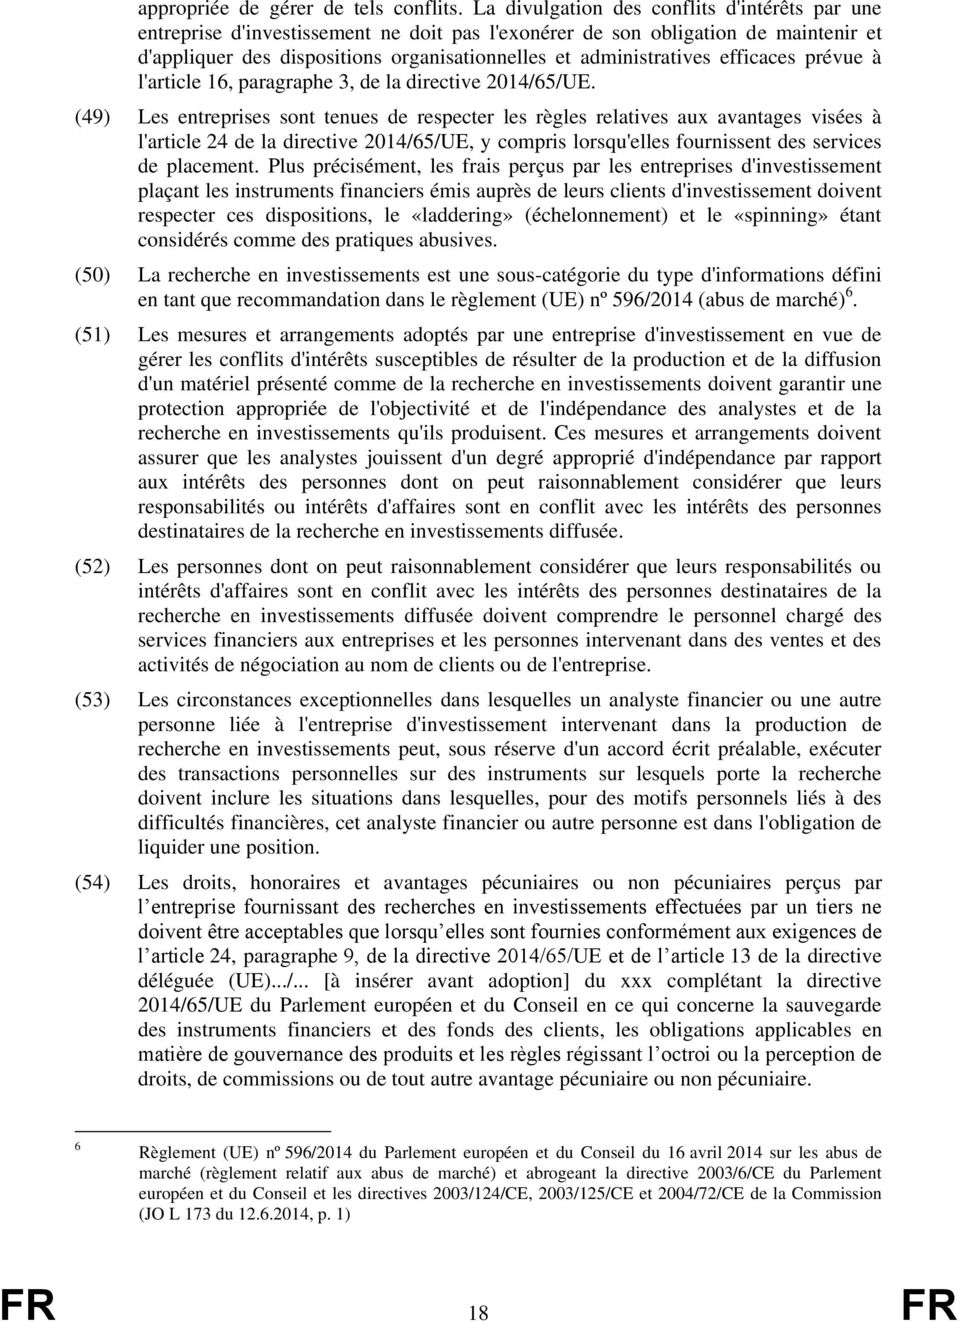 efficaces prévue à l'article 16, paragraphe 3, de la directive 2014/65/UE.